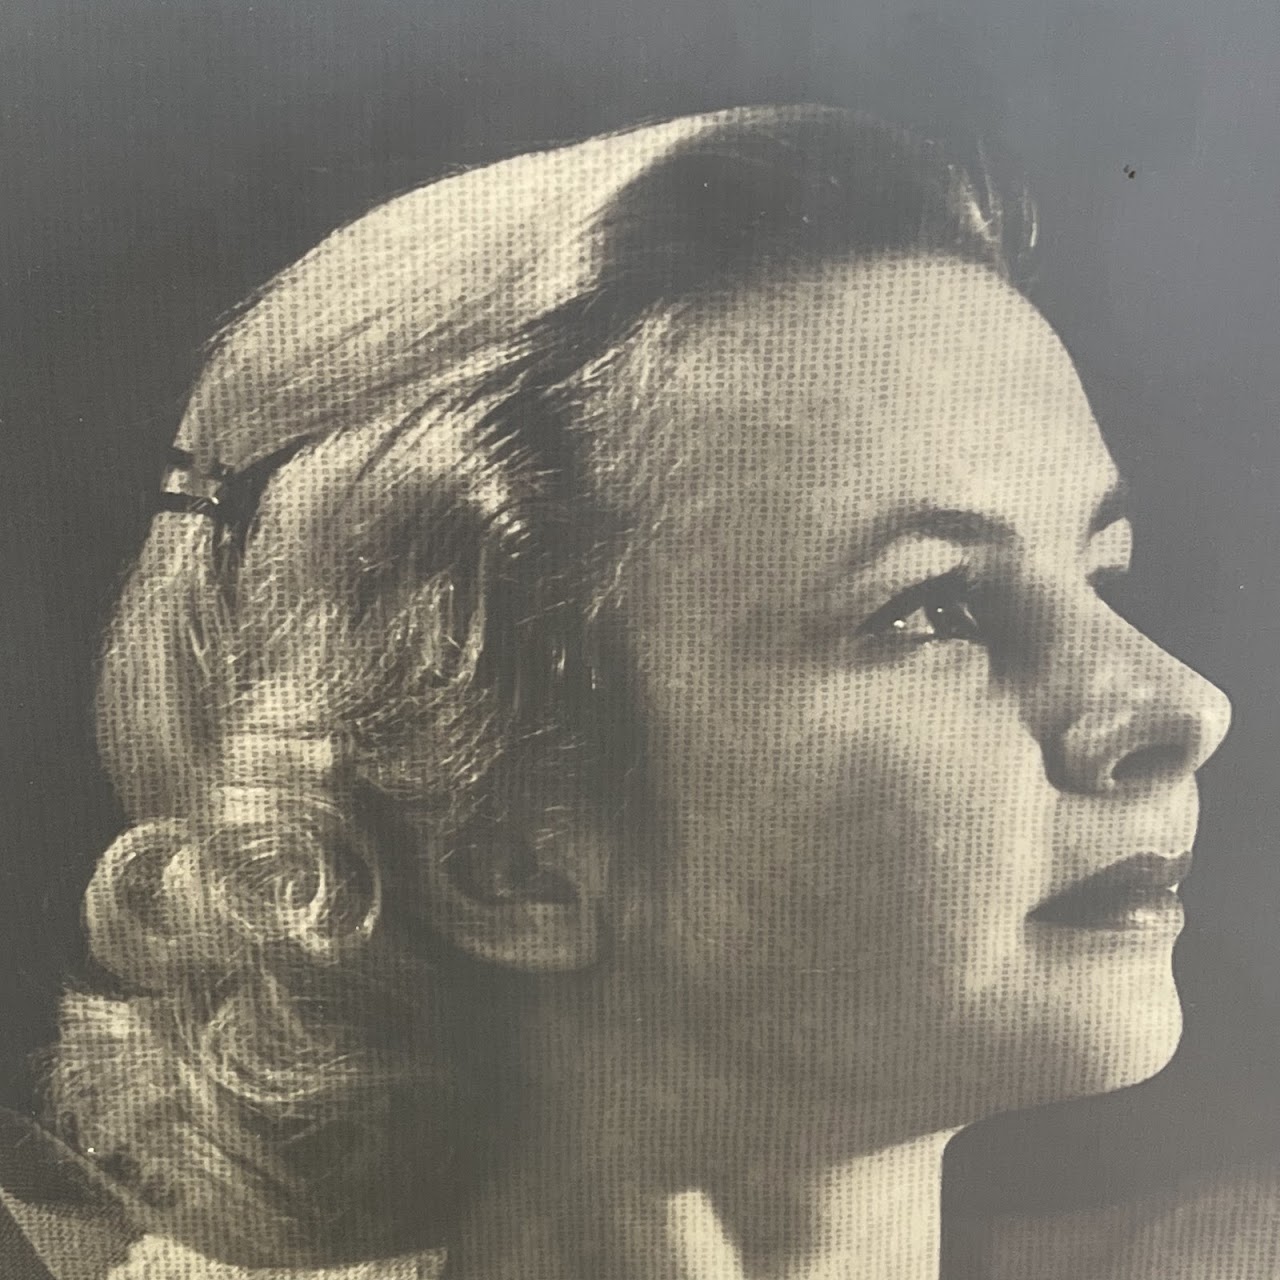 Nude Study Vintage Large Scale Offset Lithograph Portrait Photograph